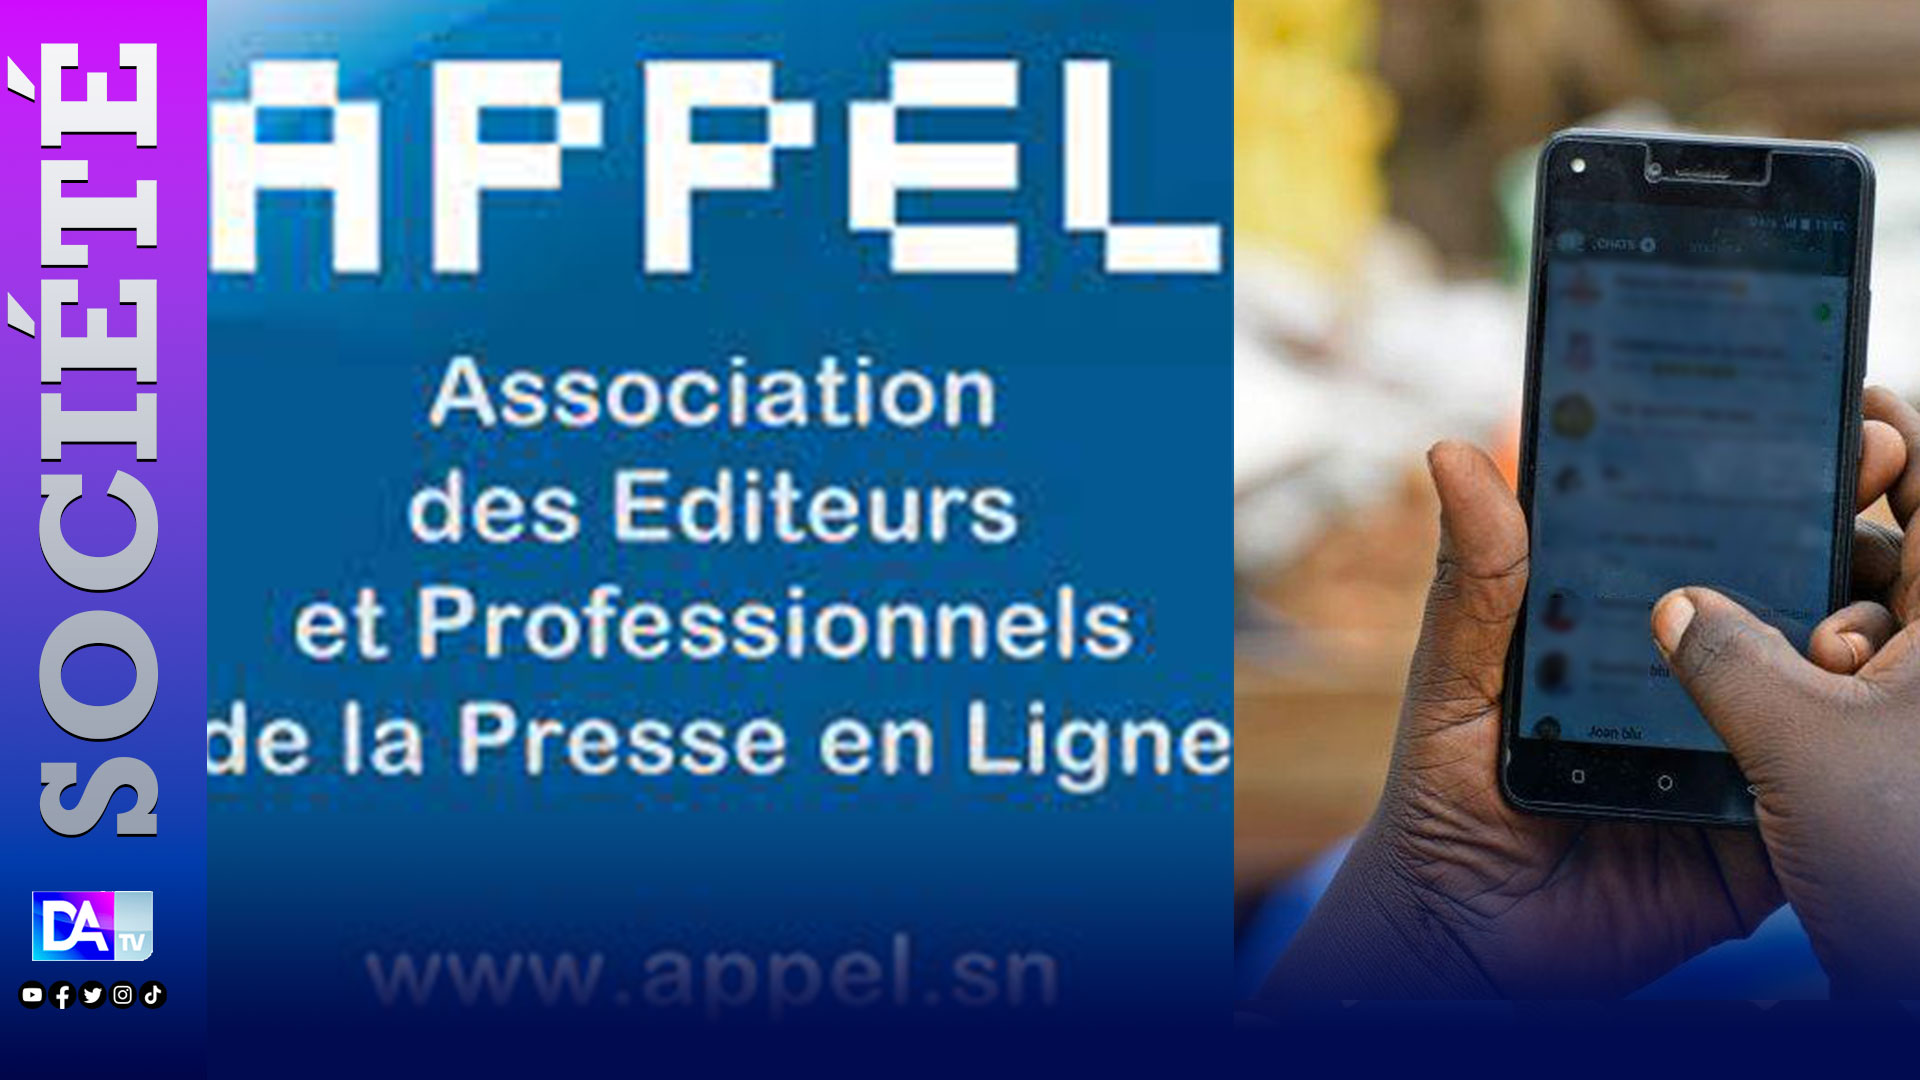 Coupure de l’Internet au Sénégal : L’APPEL dénonce un agissement anti-démocratique et une violation du droit à l’information